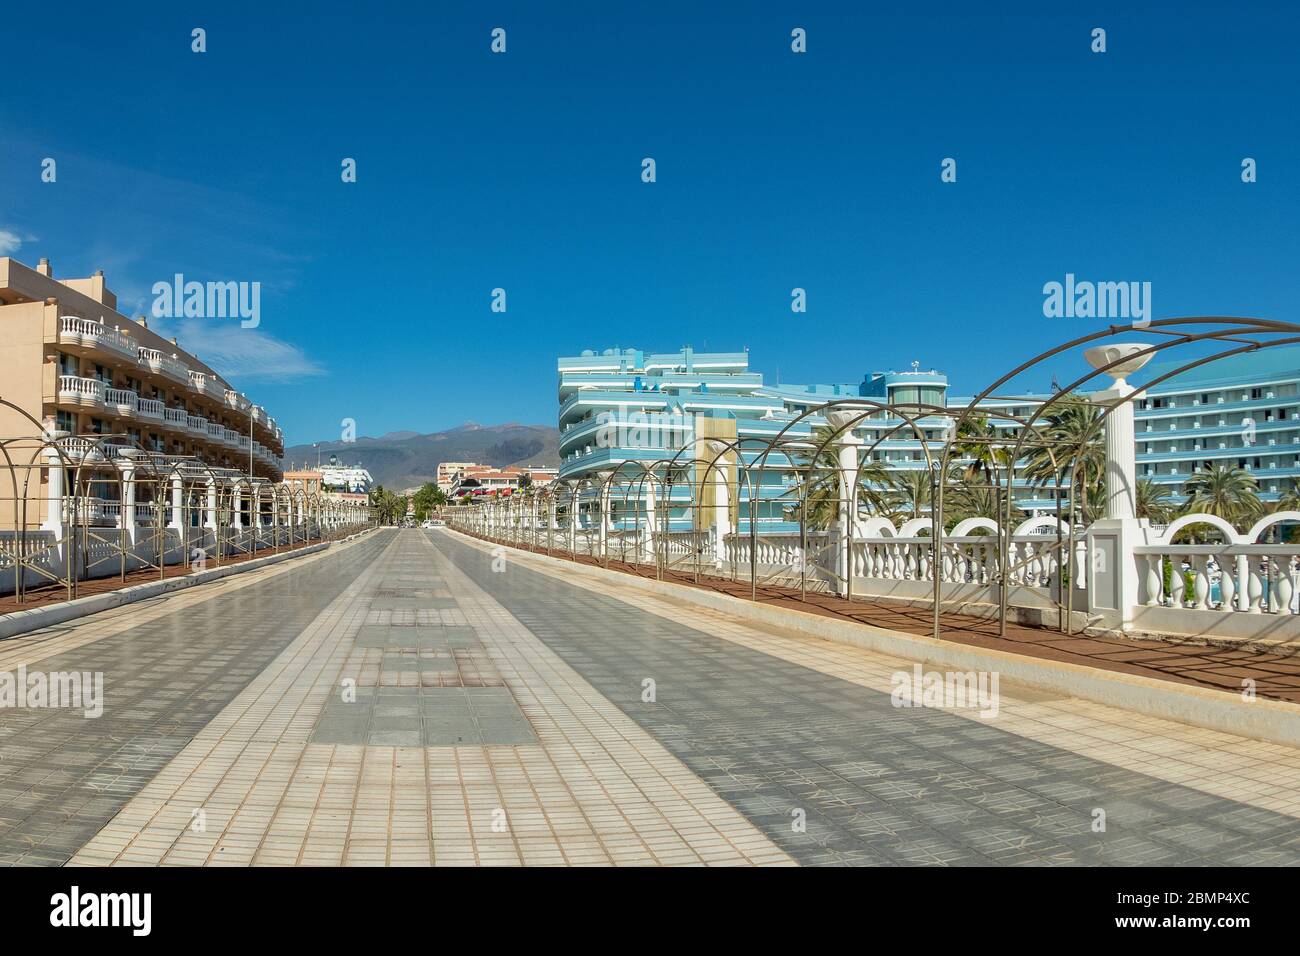 Strada pedonale completamente vuota nella località turistica Playa de las Americas. Nessun turista, tutte le persone sono in quarantena. Giornata di sole limpida. Tenero Foto Stock